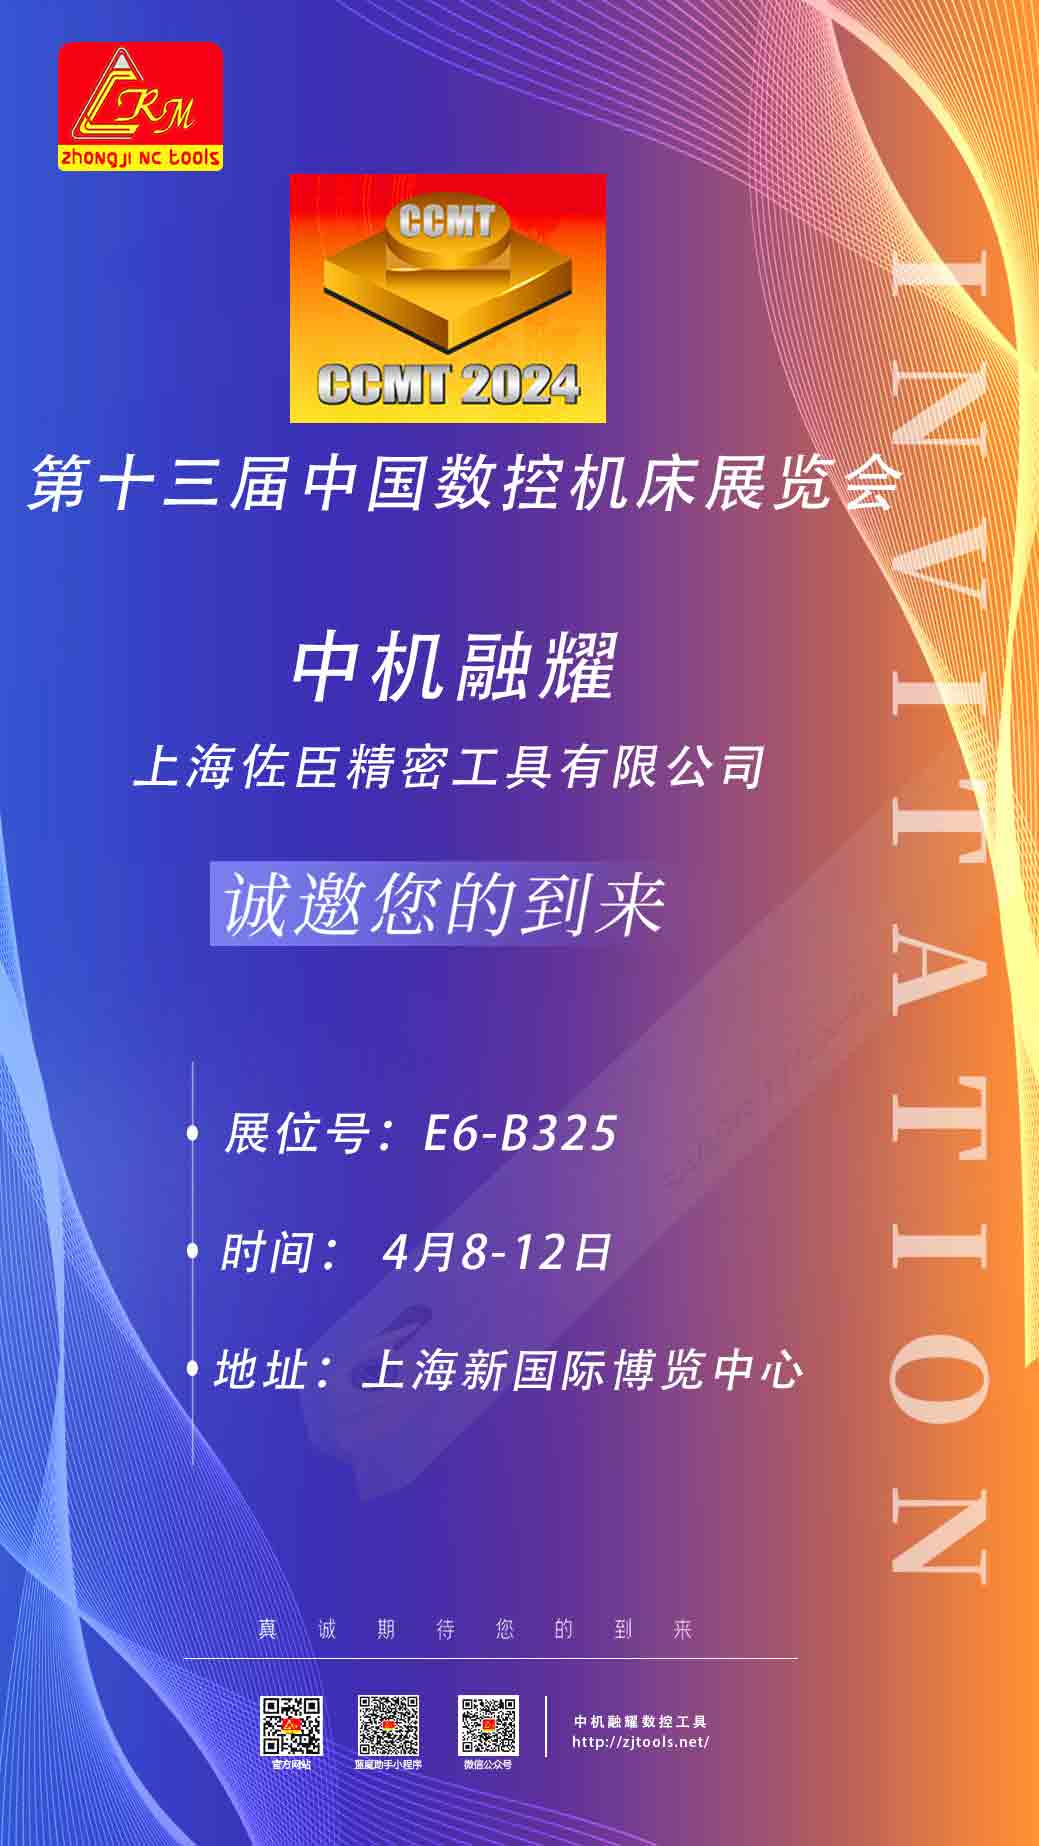 中机融耀｜邀您参加CCMT2024中国数控机床展览会，上海新国际博览中心，4月8-12日，展位号：E6-B325